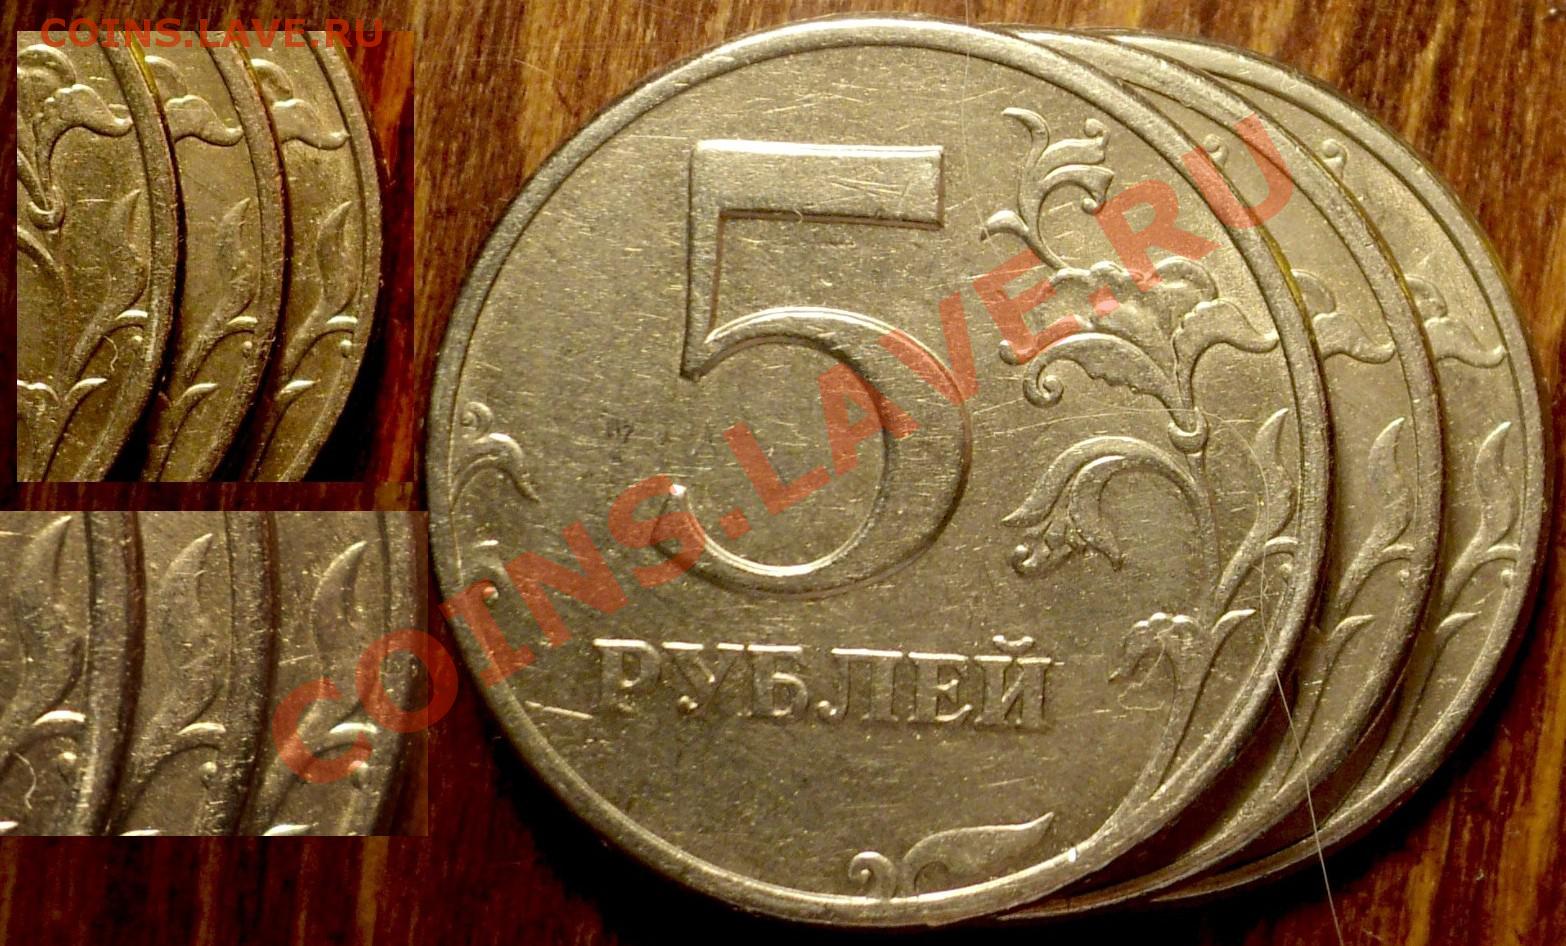 5 рублей 65. 5 Рублей 1997 СПМД шт 3. 5 Рублей 1998 СПМД -шт. 2.21-2.22. 5 Рублей 1997 СПМД 2.3. Пять рублей Санкт-Петербургский монетный двор 1997.